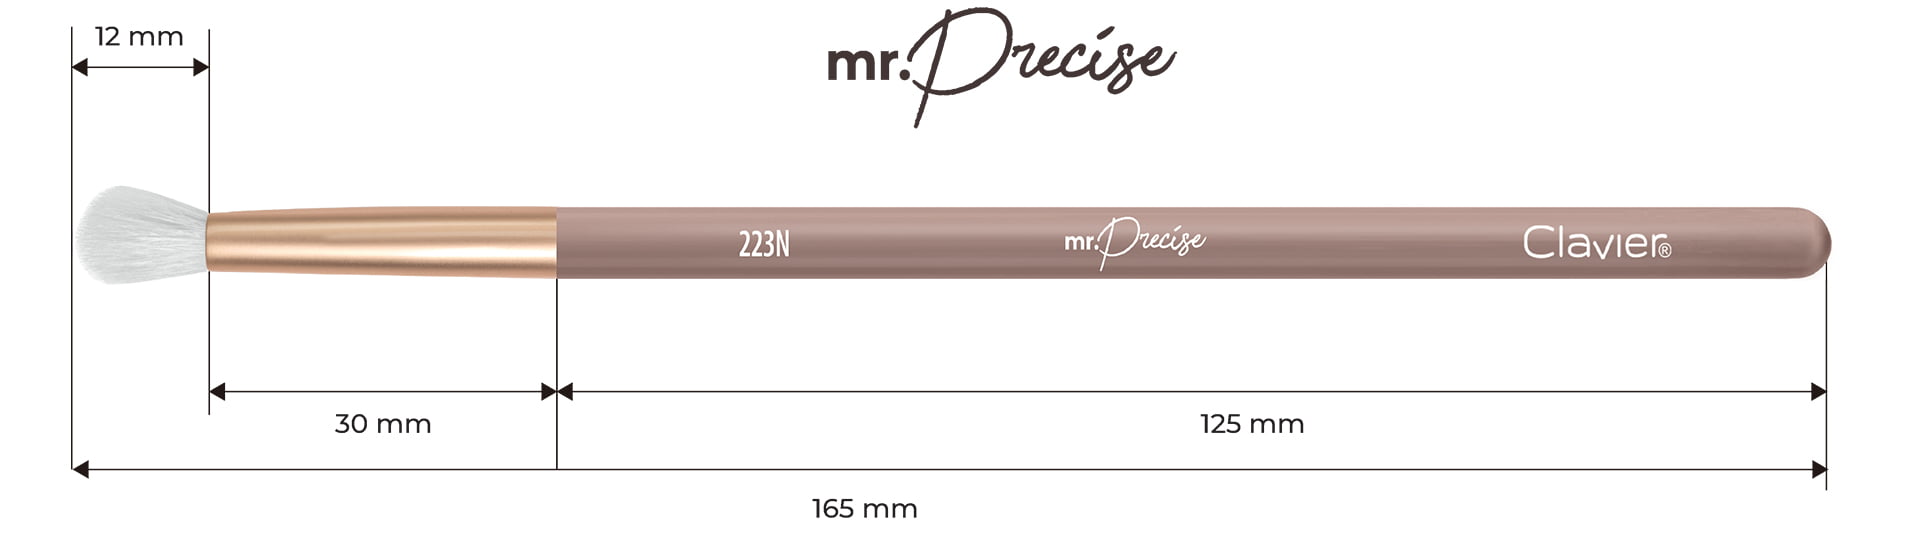 Pędzel do blendowania, cieniowania z włosia naturalnego - "Mr. Precise" 223N - Clavier.pl